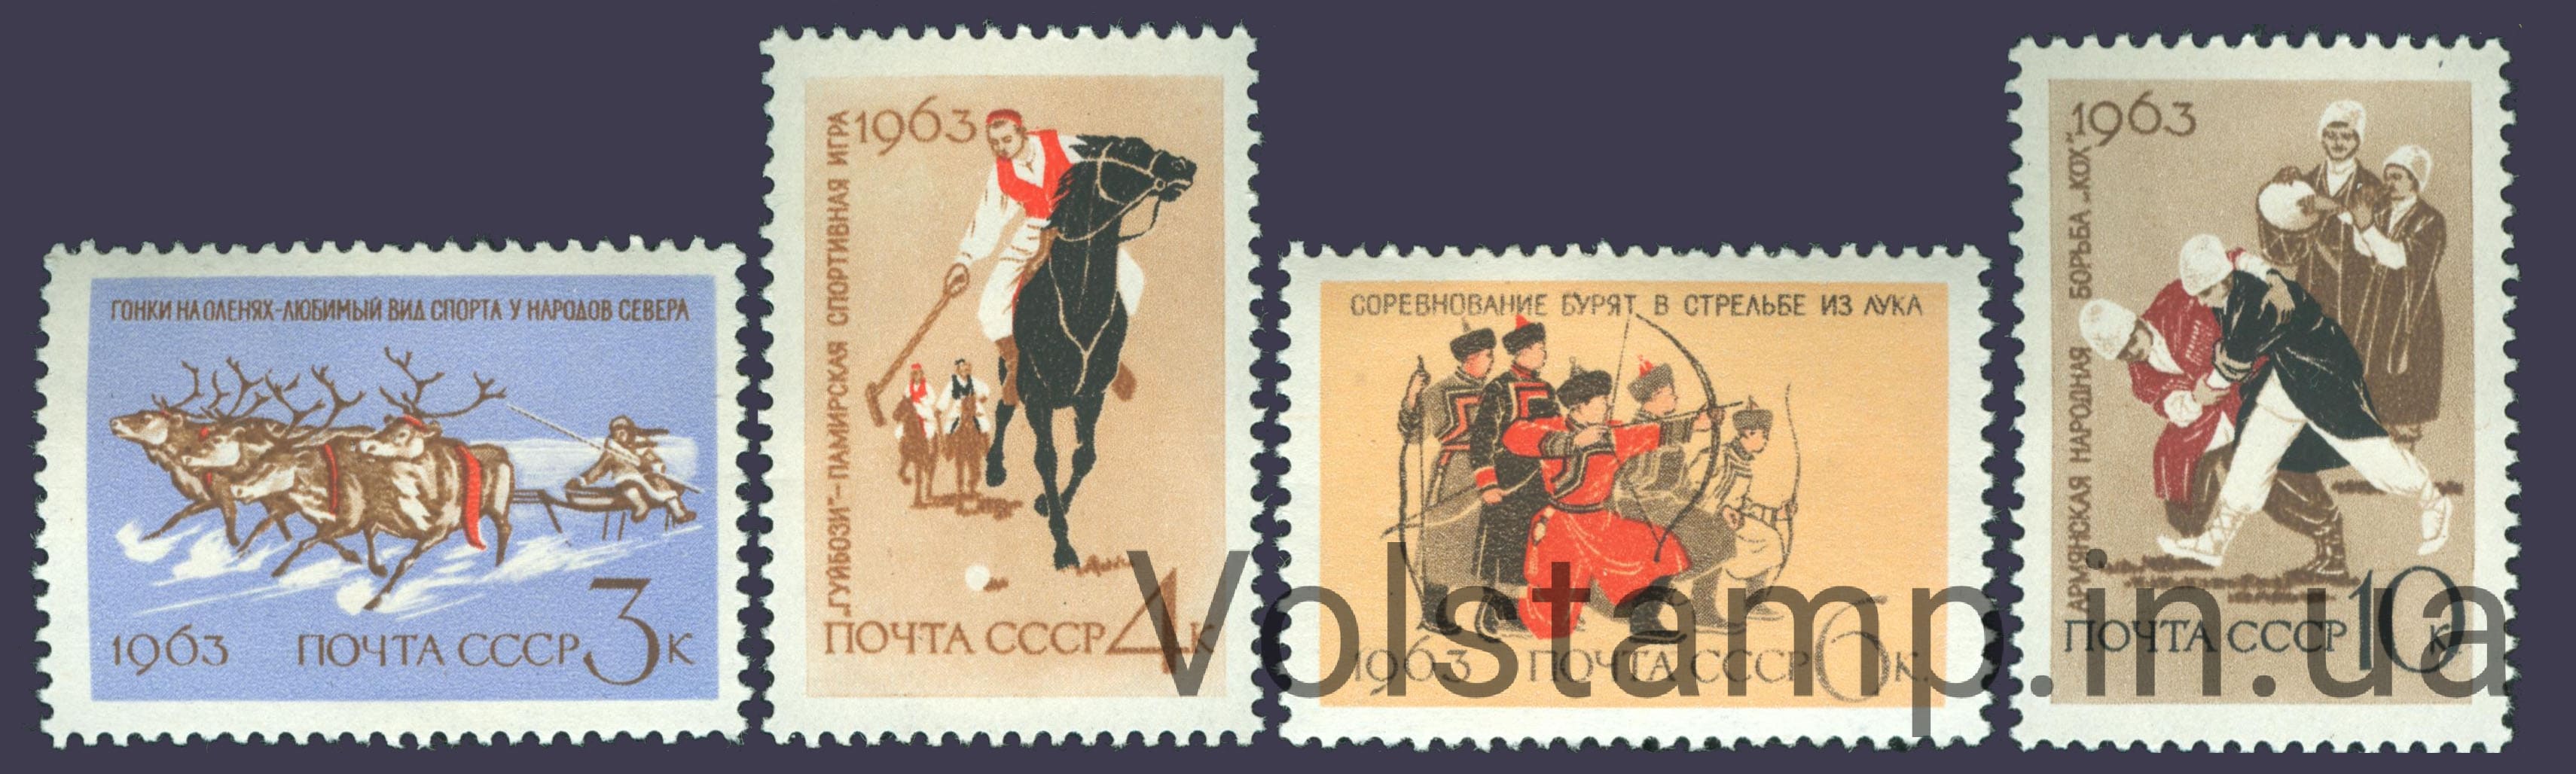 1963 серия марок Национальный спорт в СССР №2810-2813